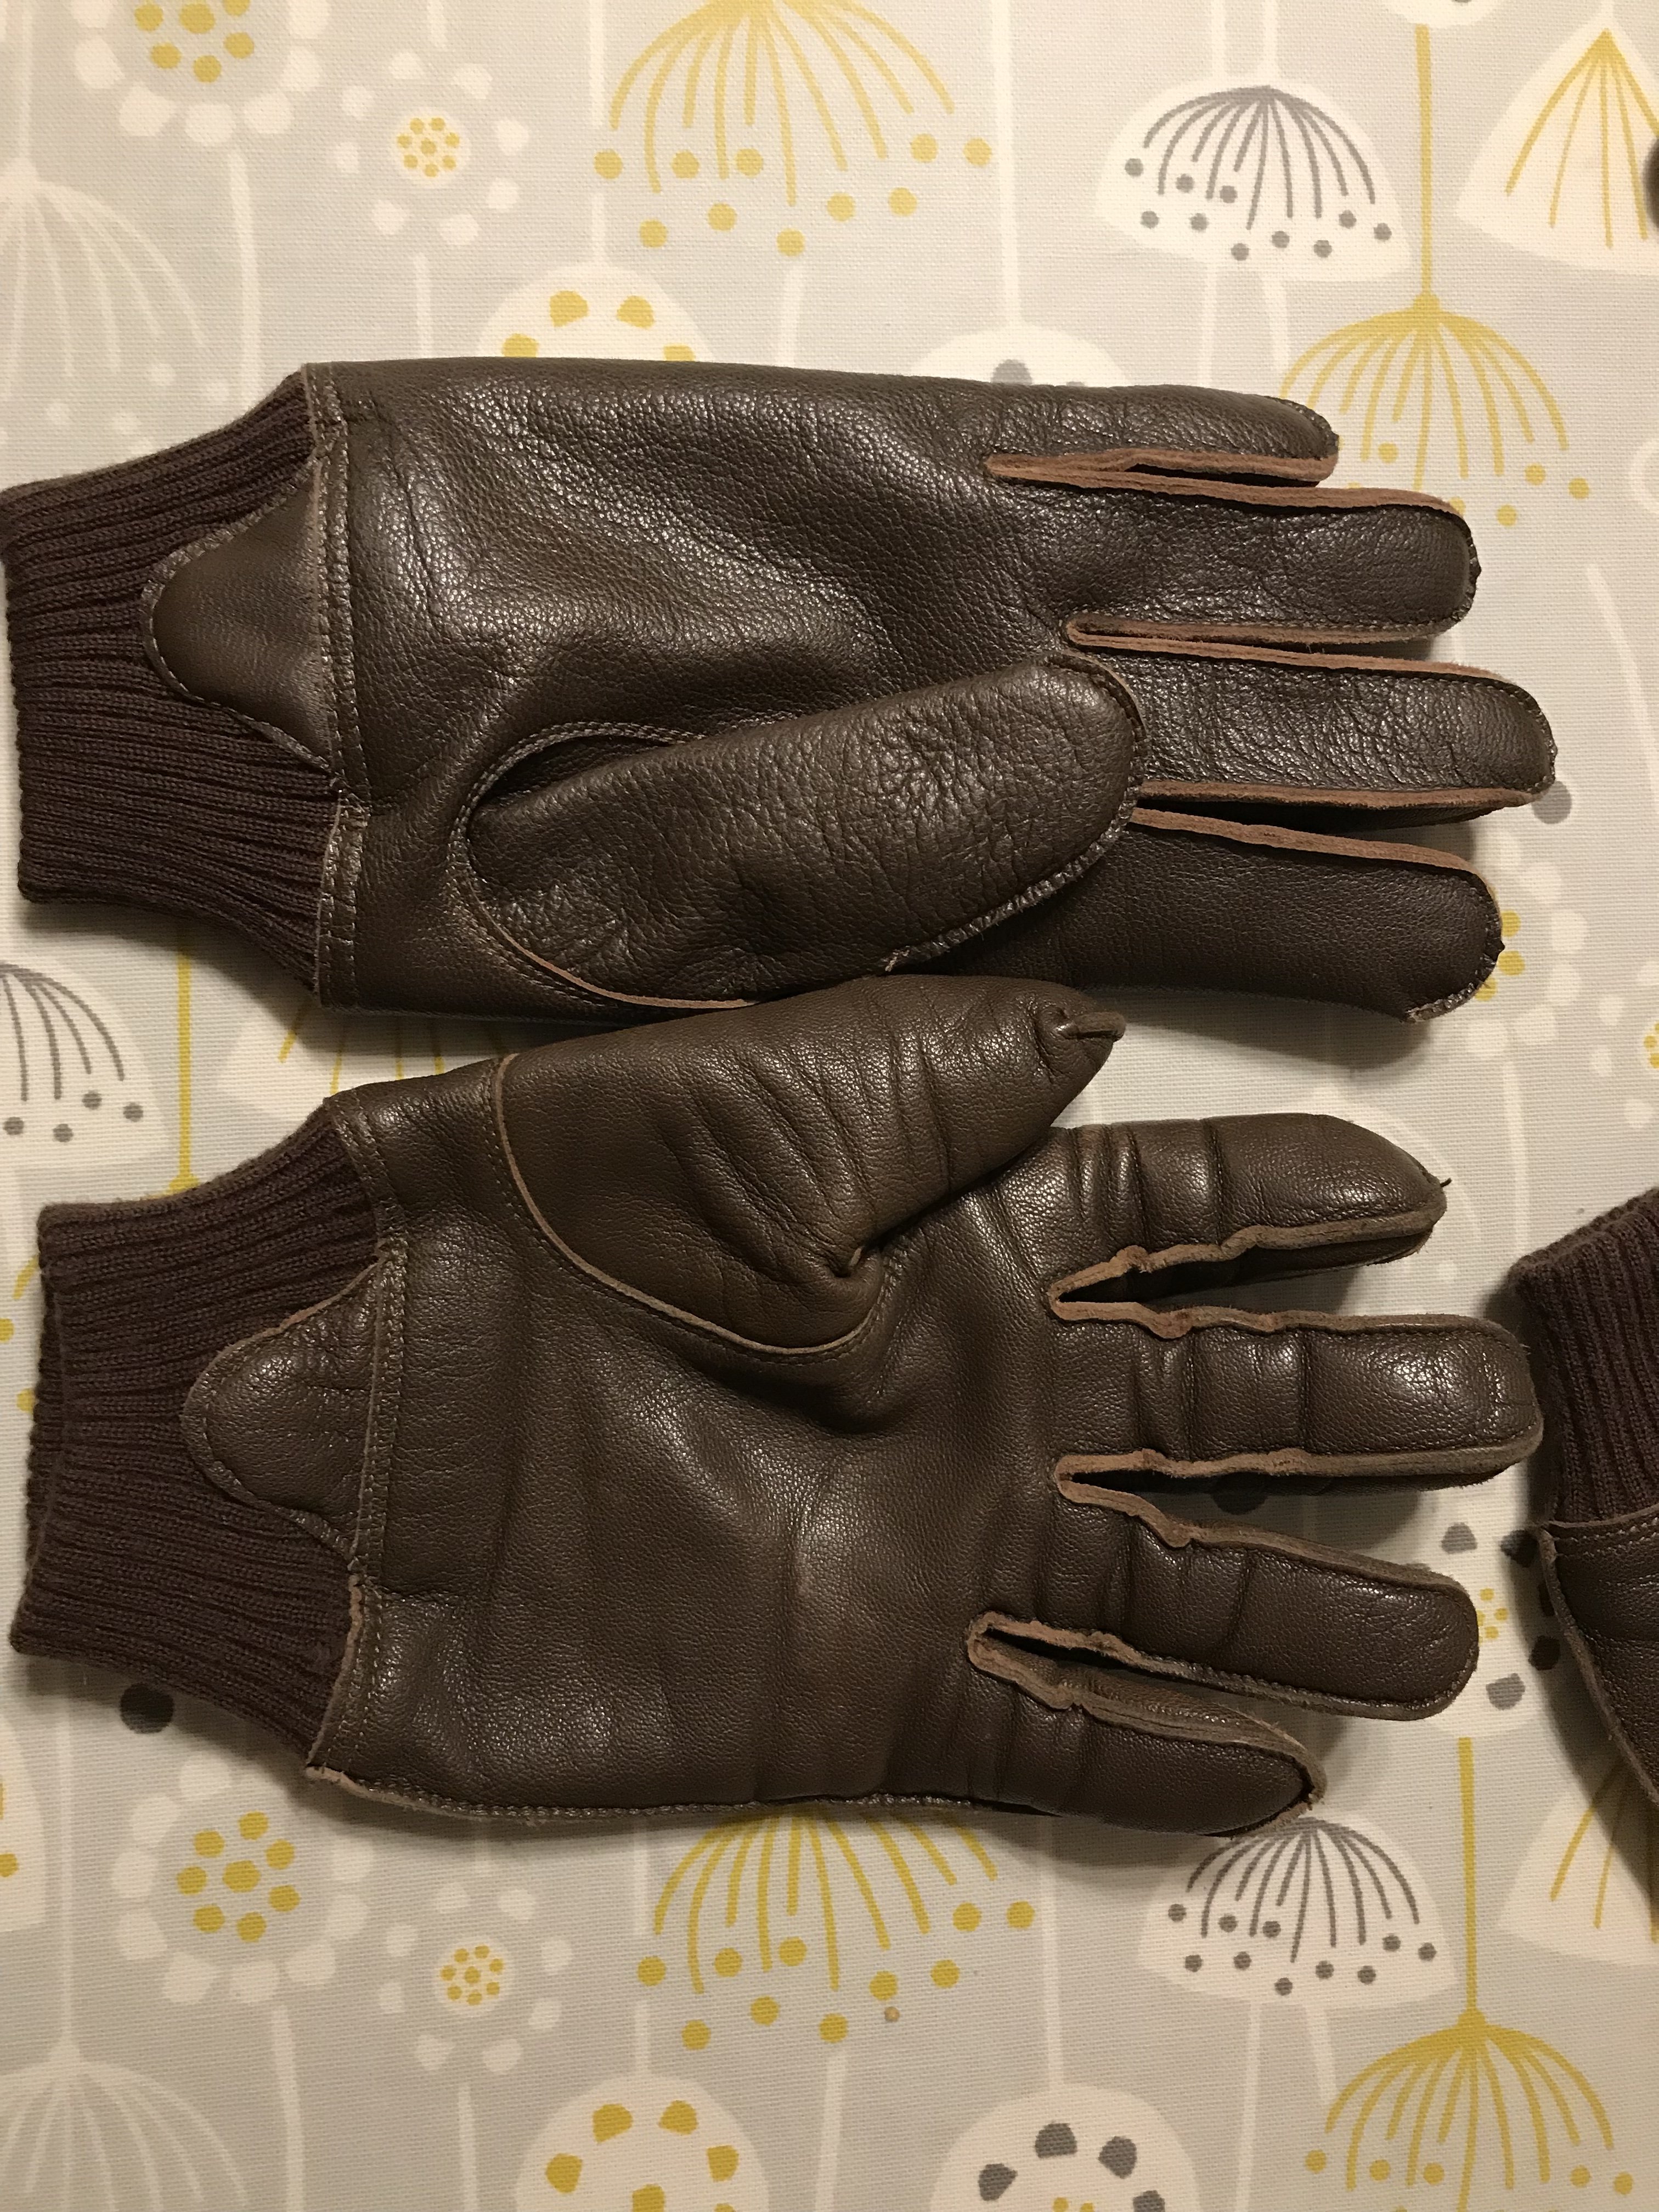 MASH A-10/USN Gloves | Vintage Leather Jackets Forum